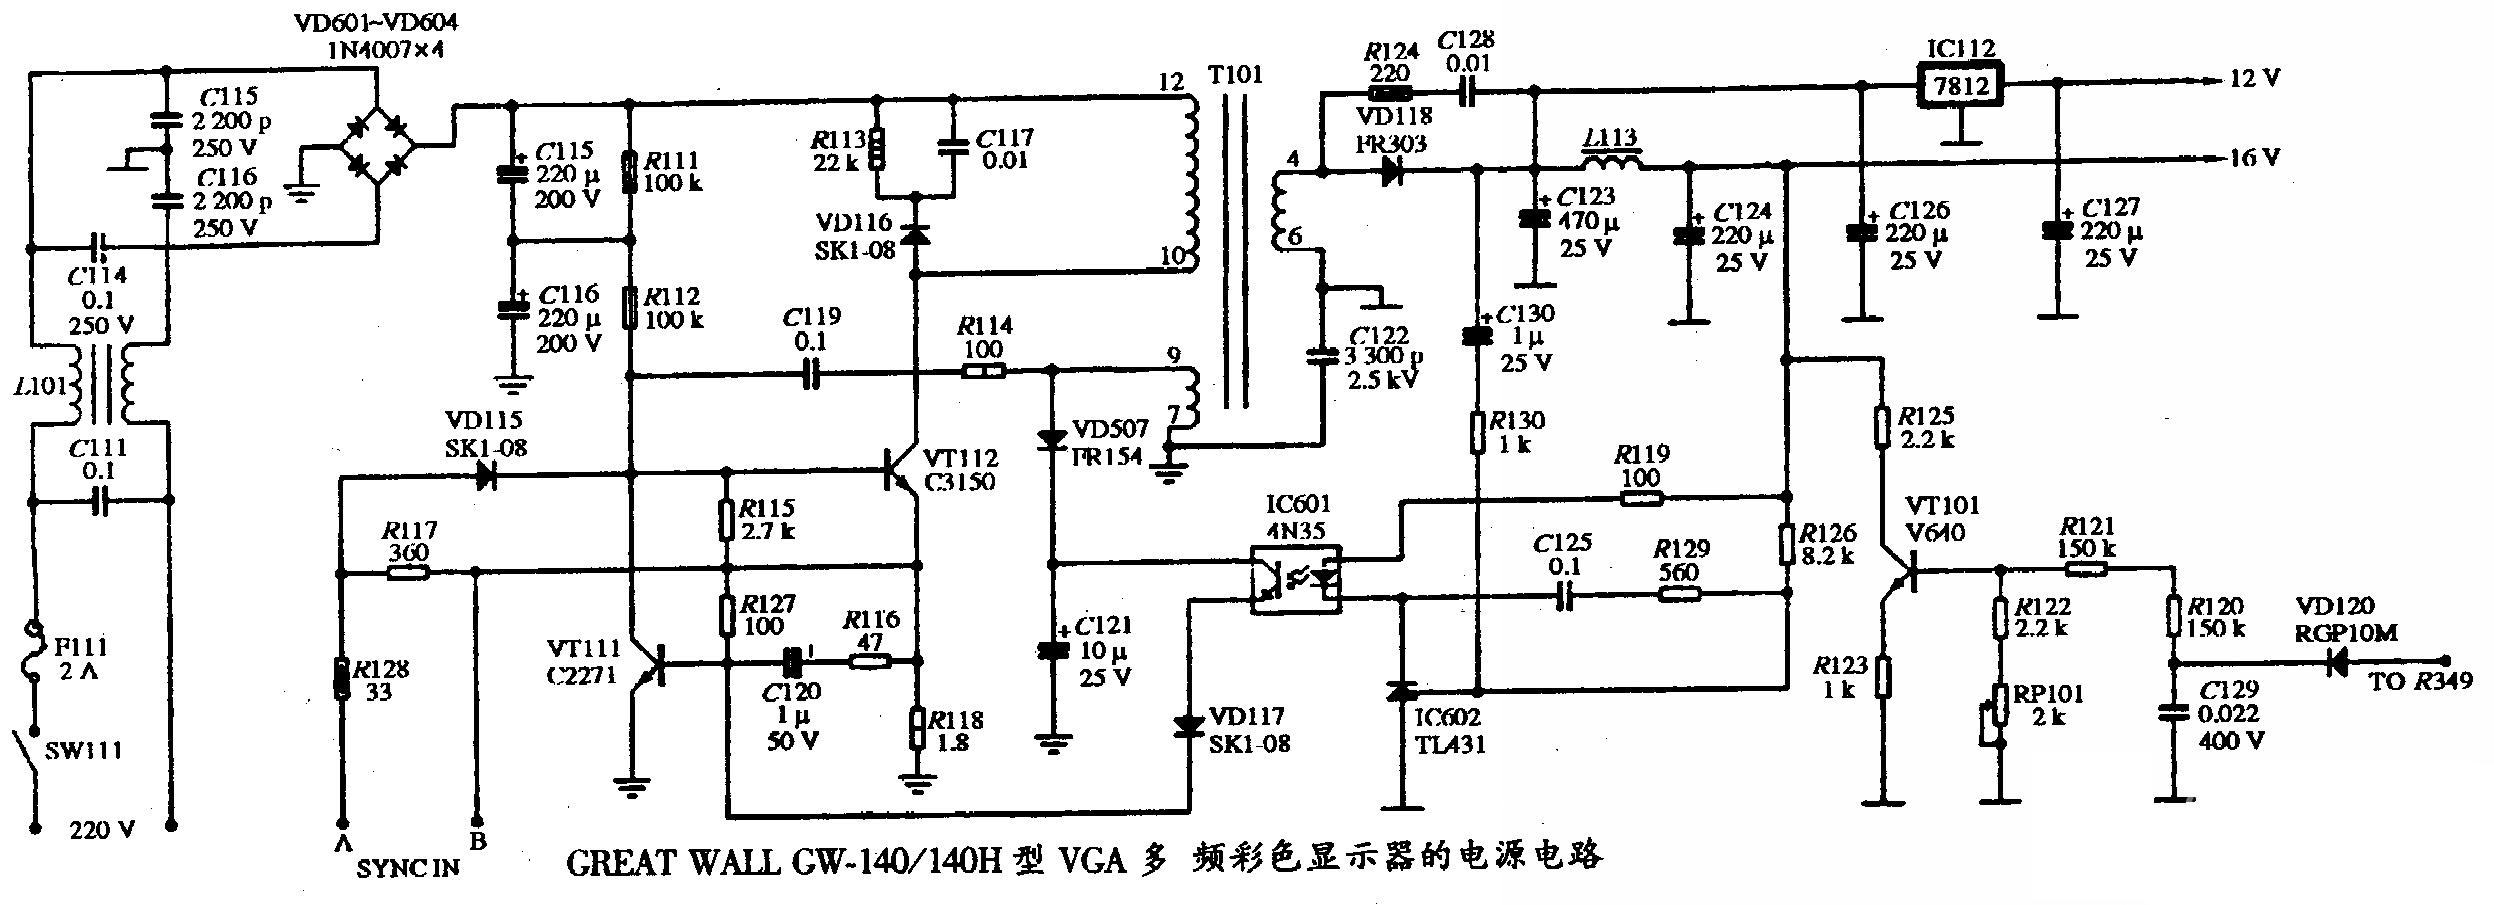 GREAT WALL GW-140/140H型VGA多频彩色显示器的电源电路图